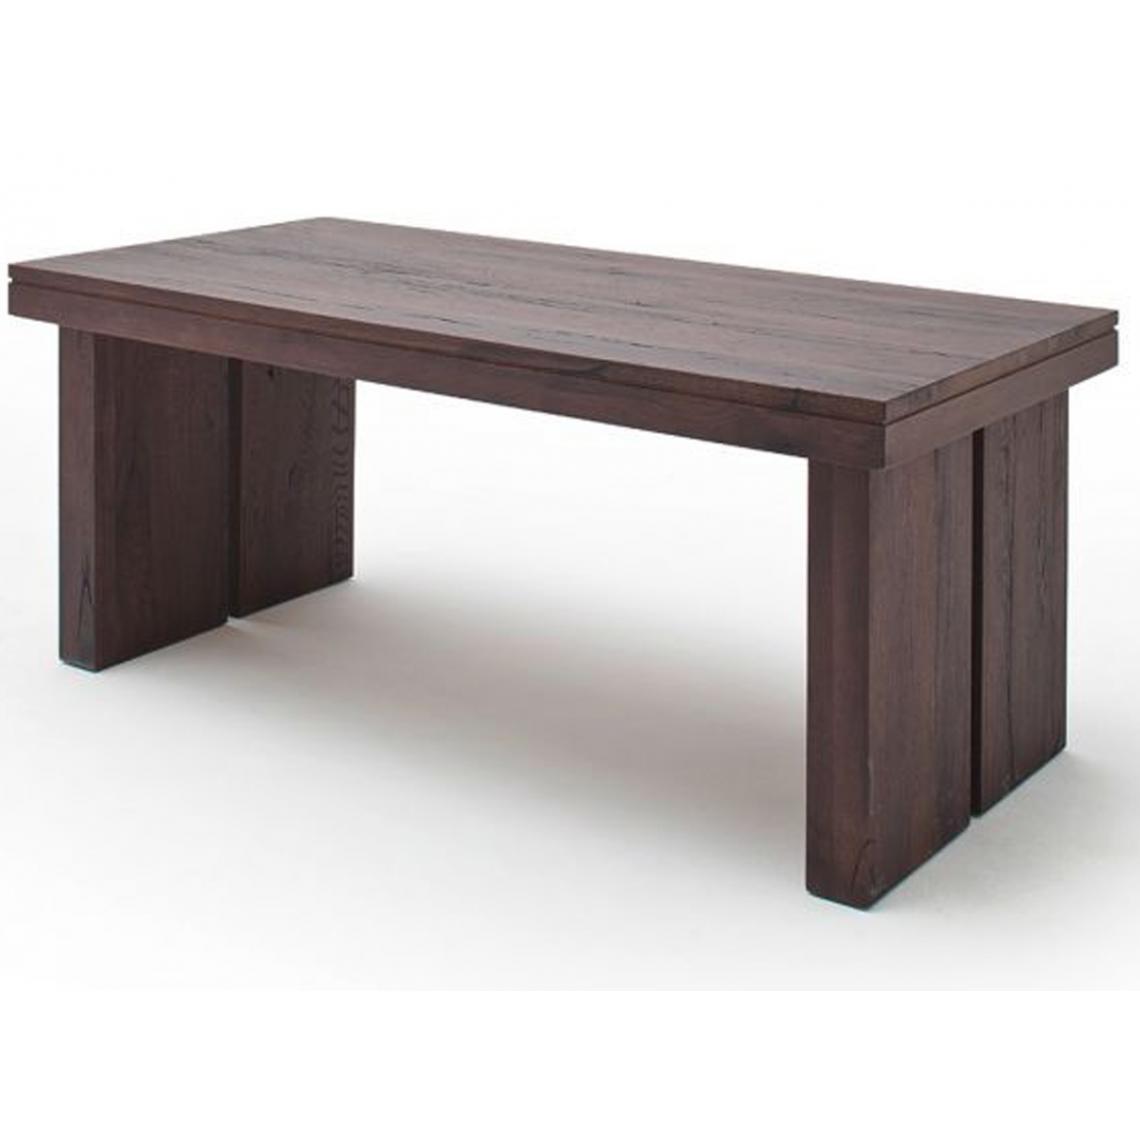 Pegane - Table à manger rectangulaire en chêne massif patiné laqué mat - L.220 x H.76 x P.100 cm - Tables à manger